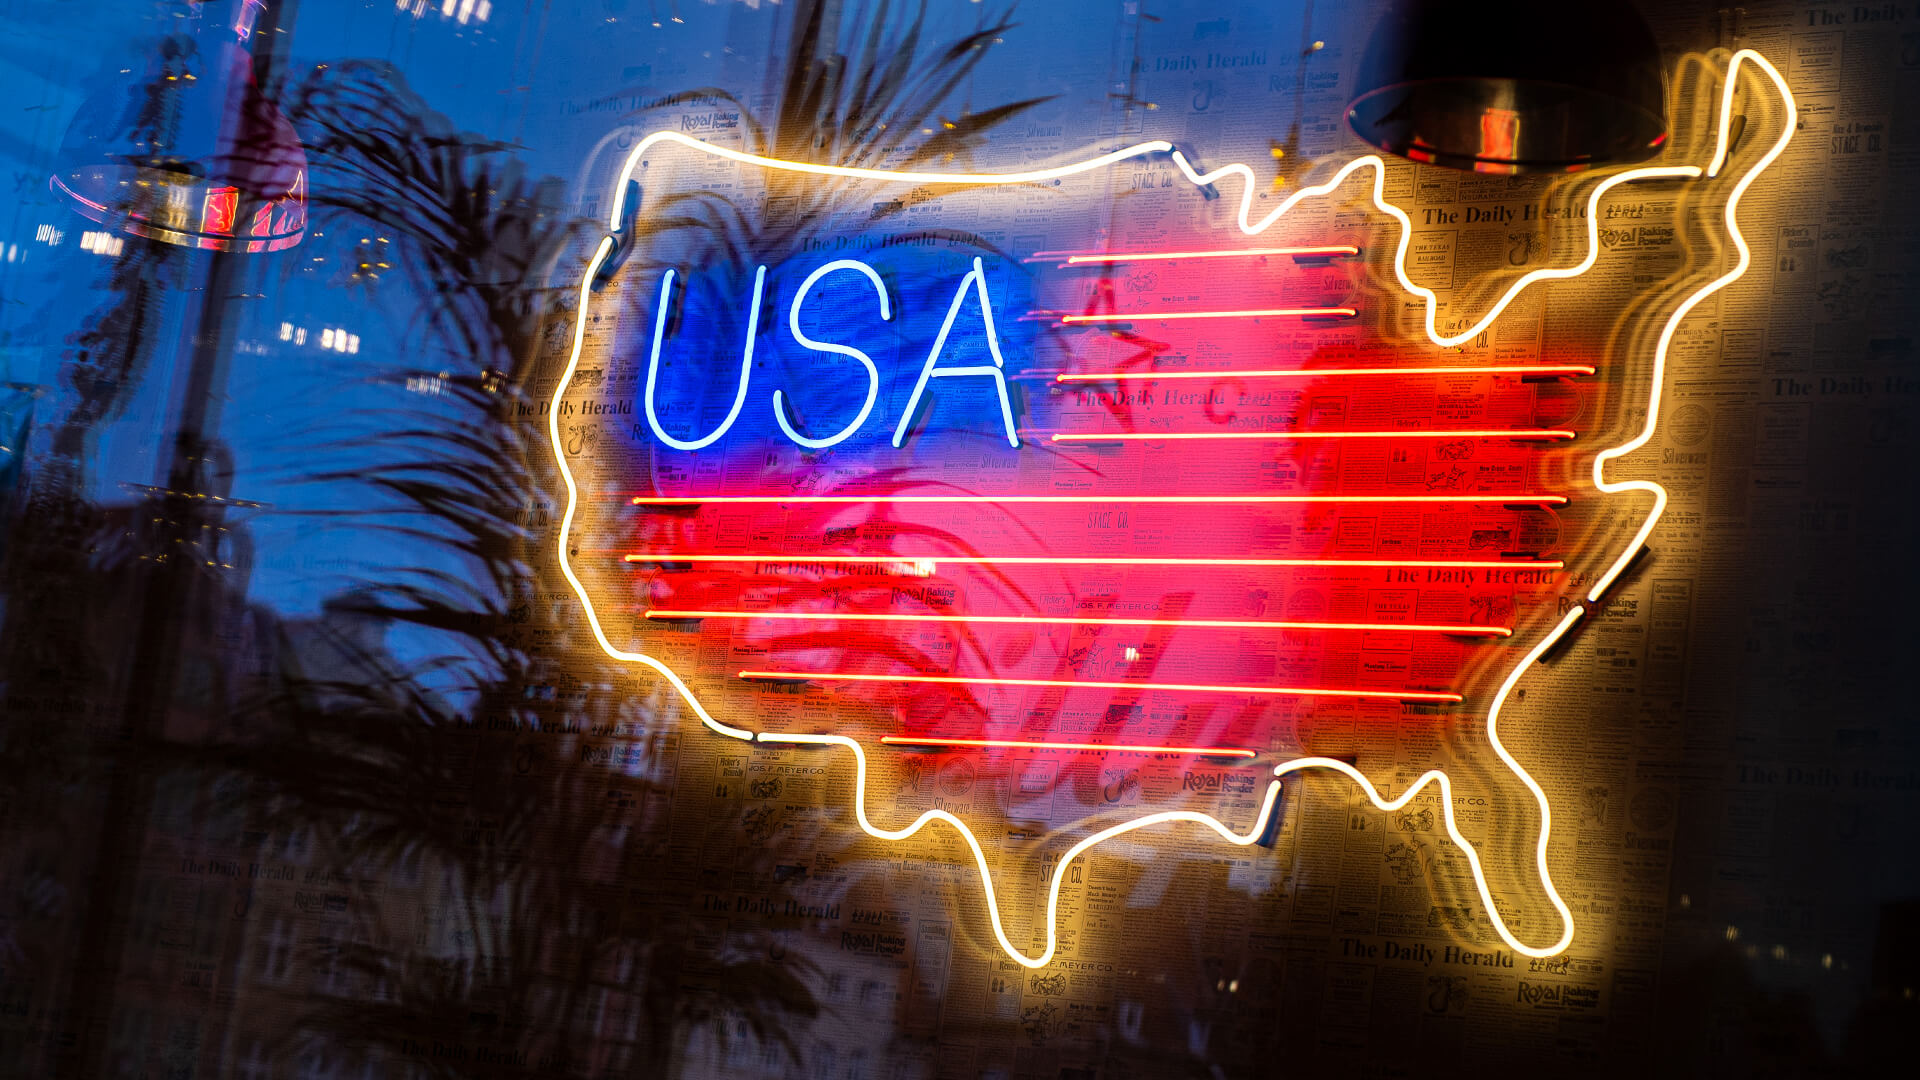 Mapa USA - USA Karte, Neon, farbig, Zeichen, Neon Hersteller, usa-map-sign-neos